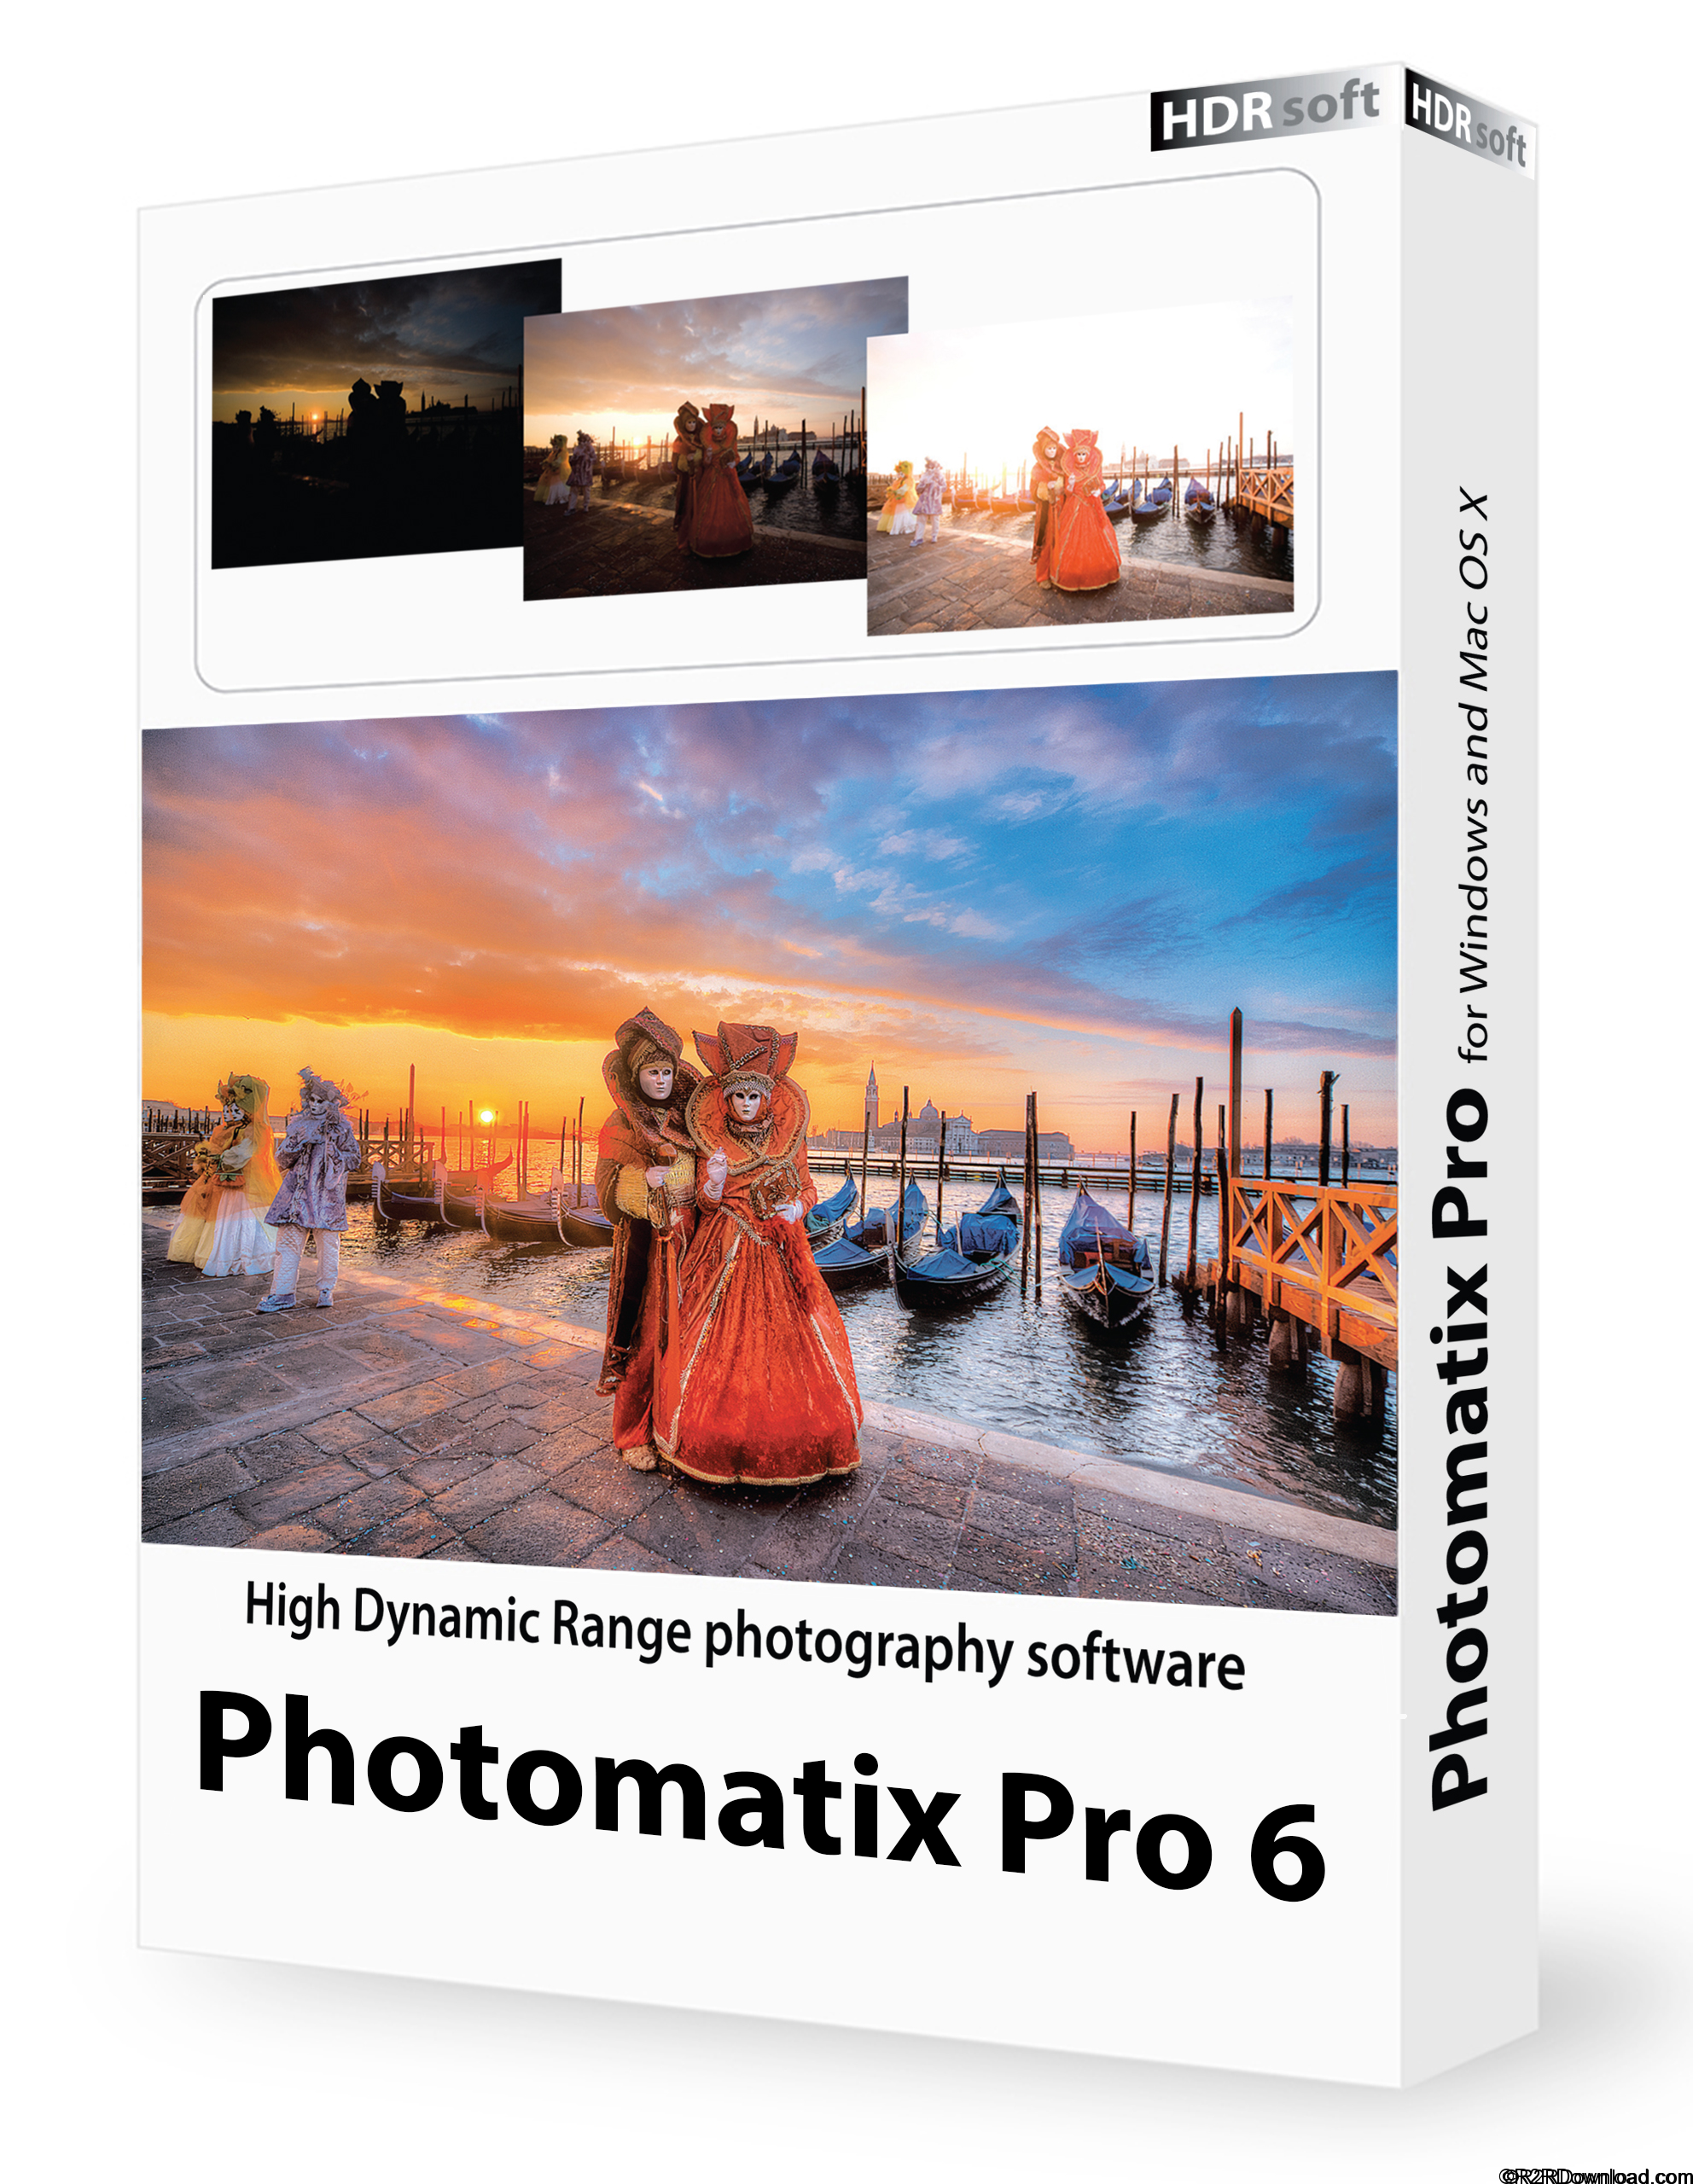 HDRsoft Photomatix Pro 6 Free Download(Mac OS X)